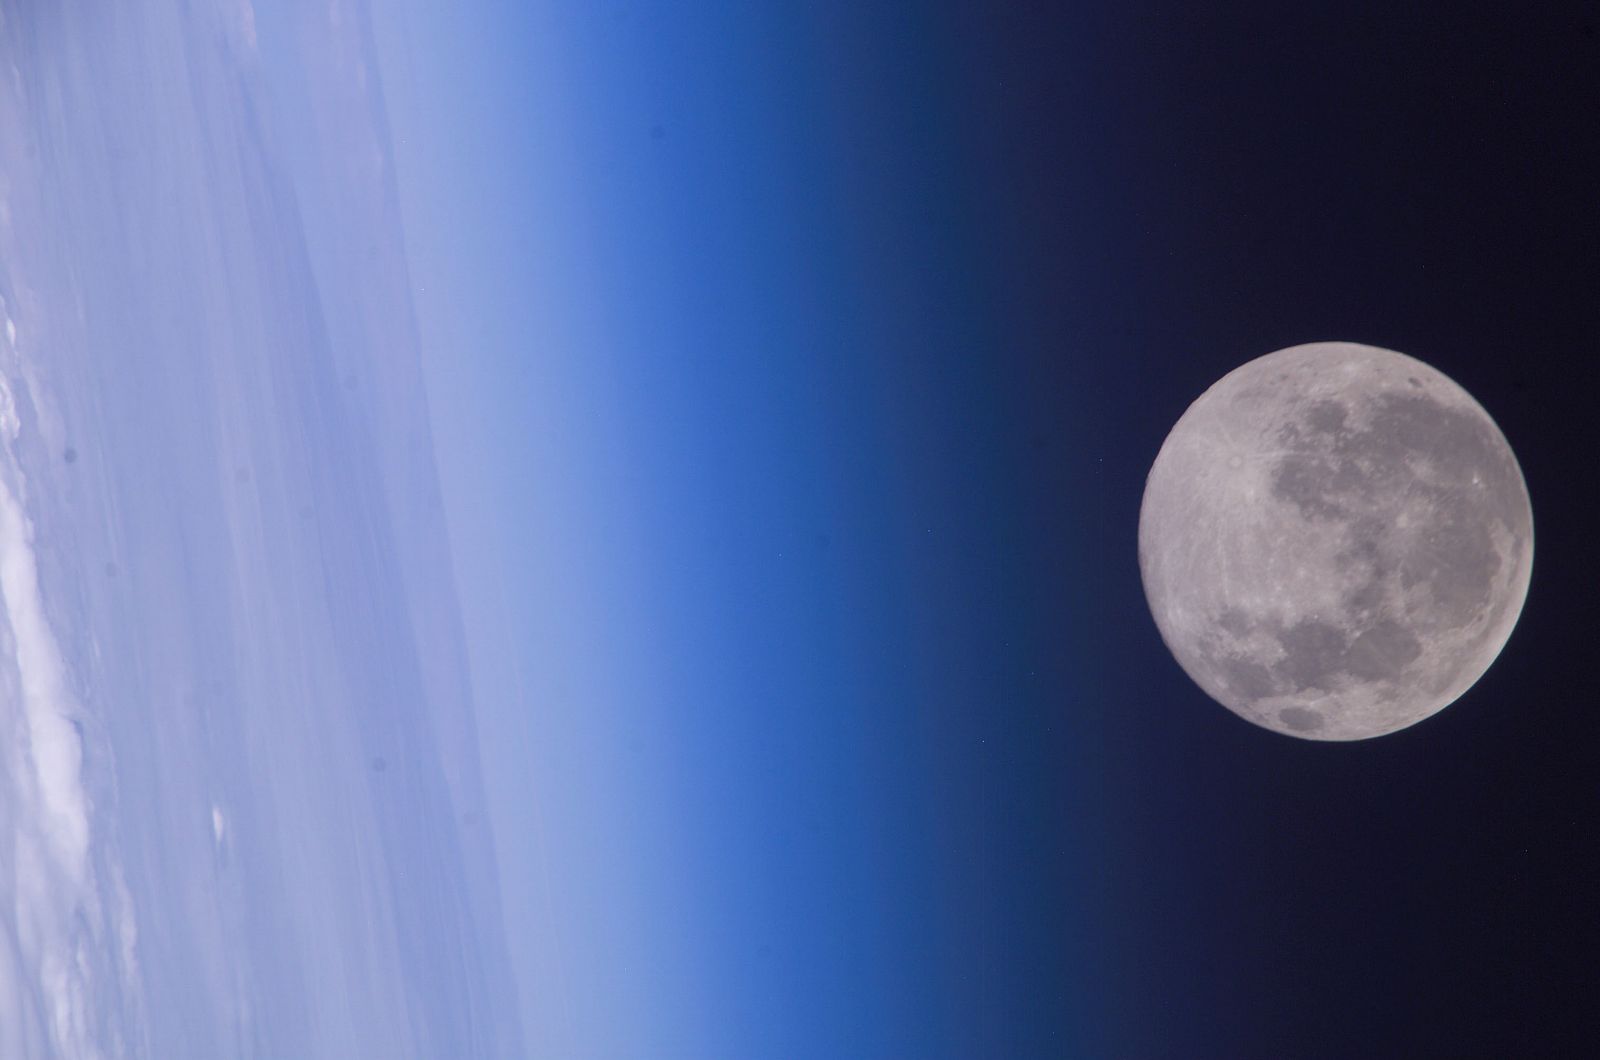 Vista desde el espacio del horizonte de la Tierra y la Luna